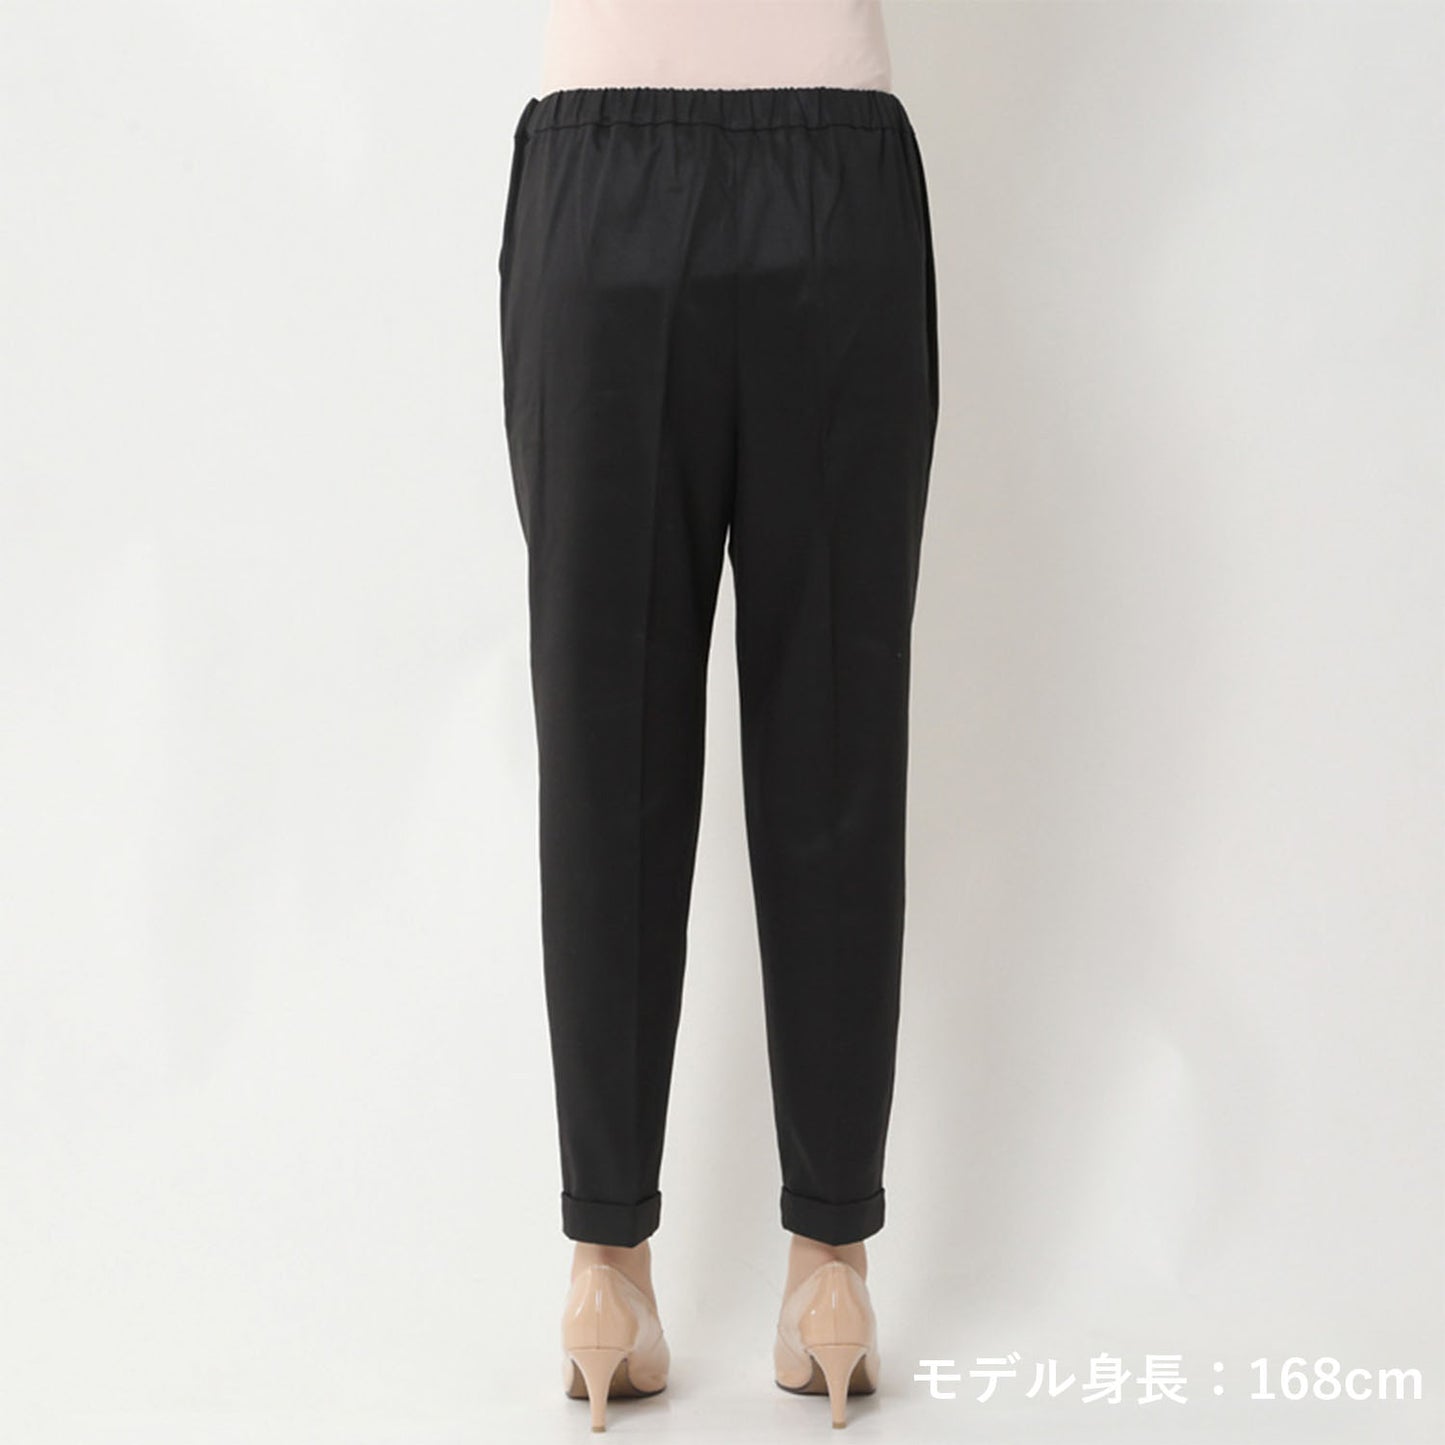 オケージョンブラックシャツインパンツ(model:168cm 着用サイズ:SM)